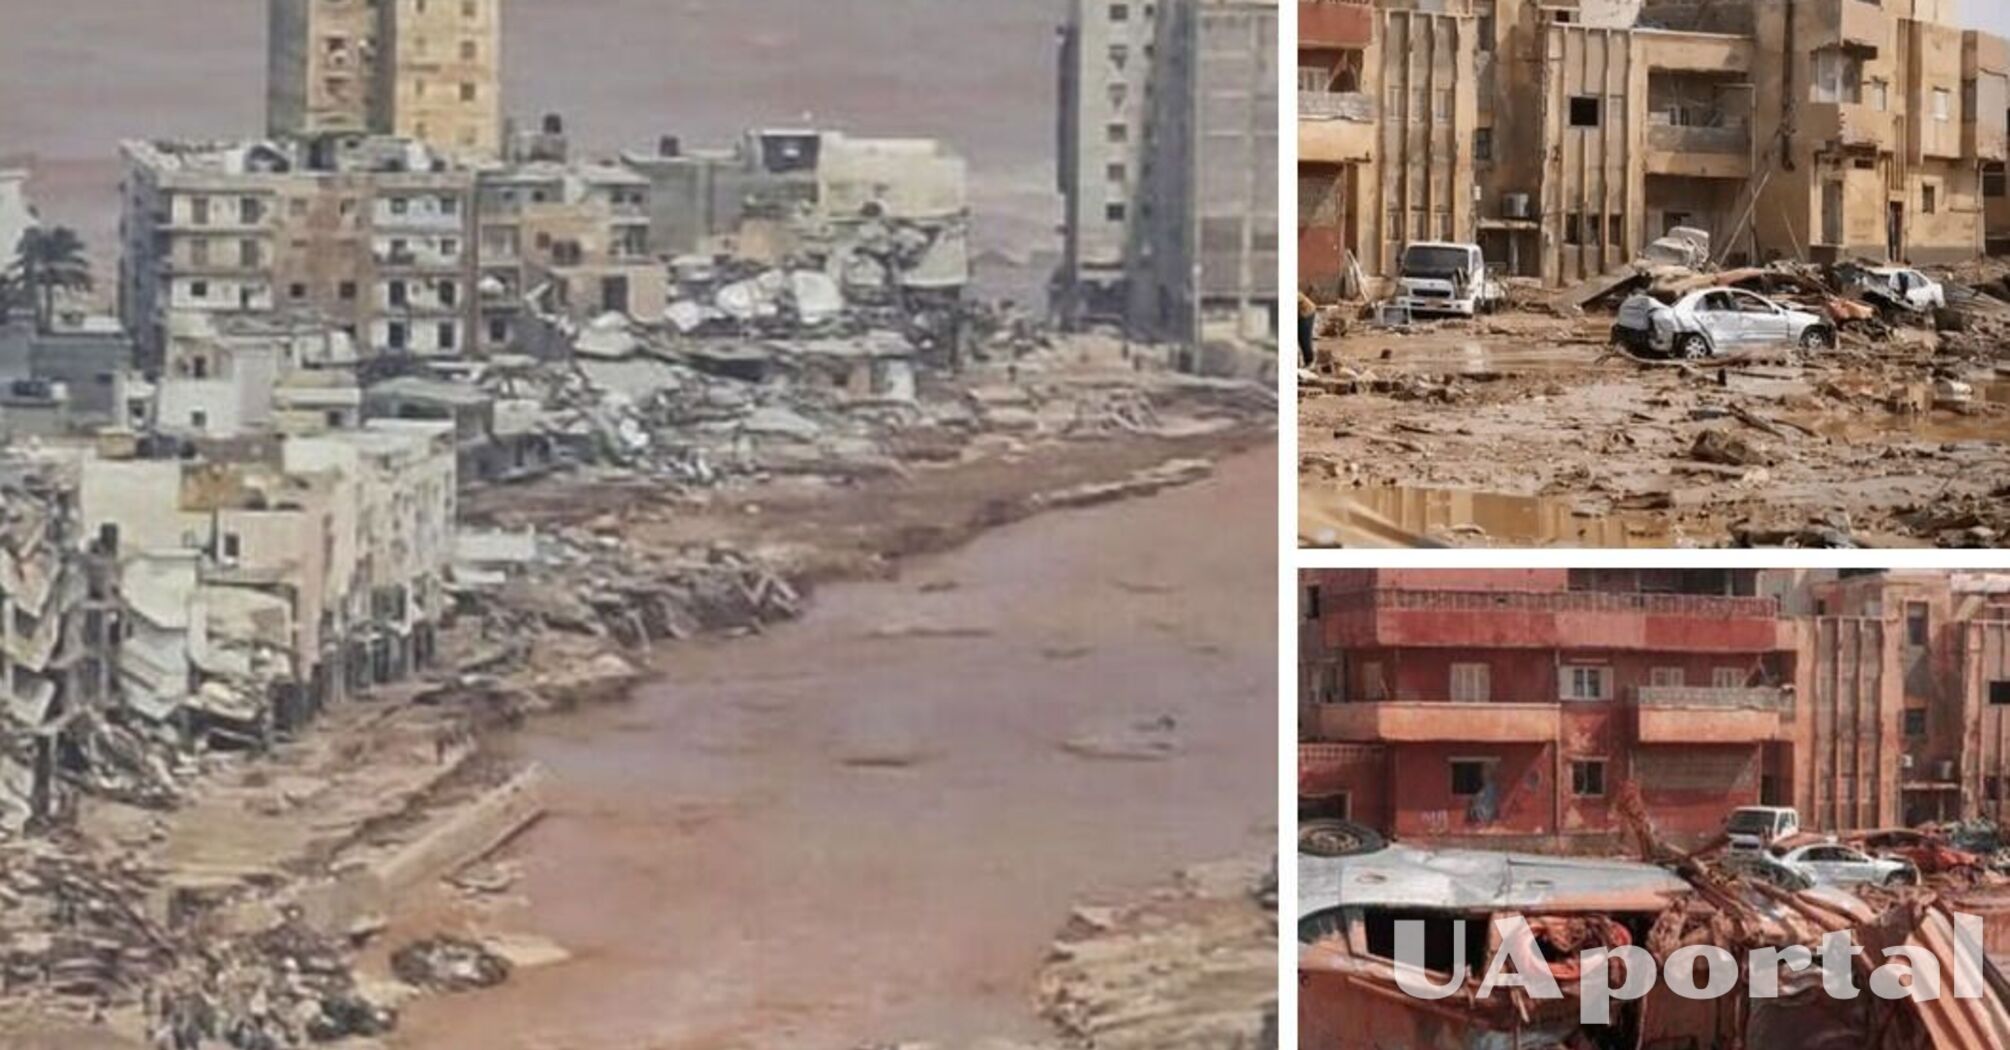 Śmiertelne powodzie w Libii pochłonęły 6 000 istnień ludzkich, ponad 10 000 zaginęło (zdjęcia i wideo)